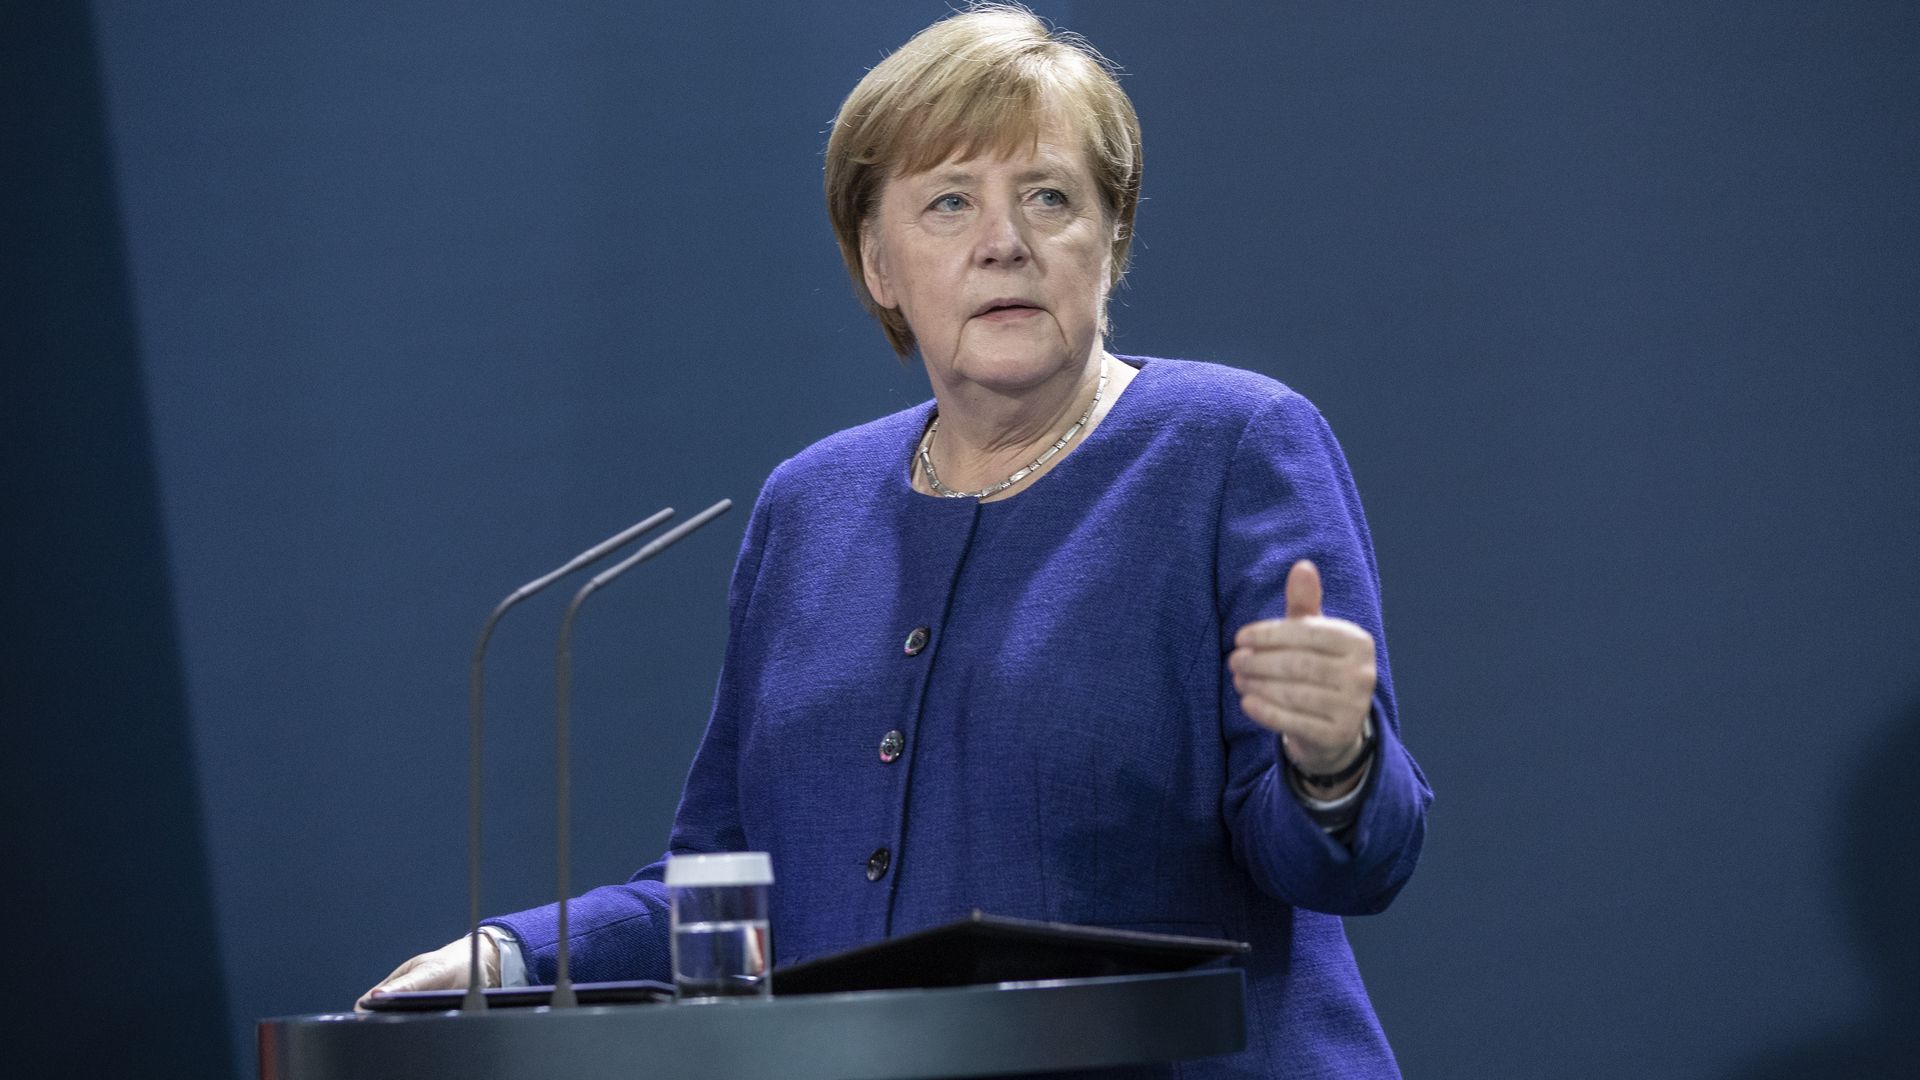 German Chancellor Angela Merkel speaking in Berlin in November 2020.